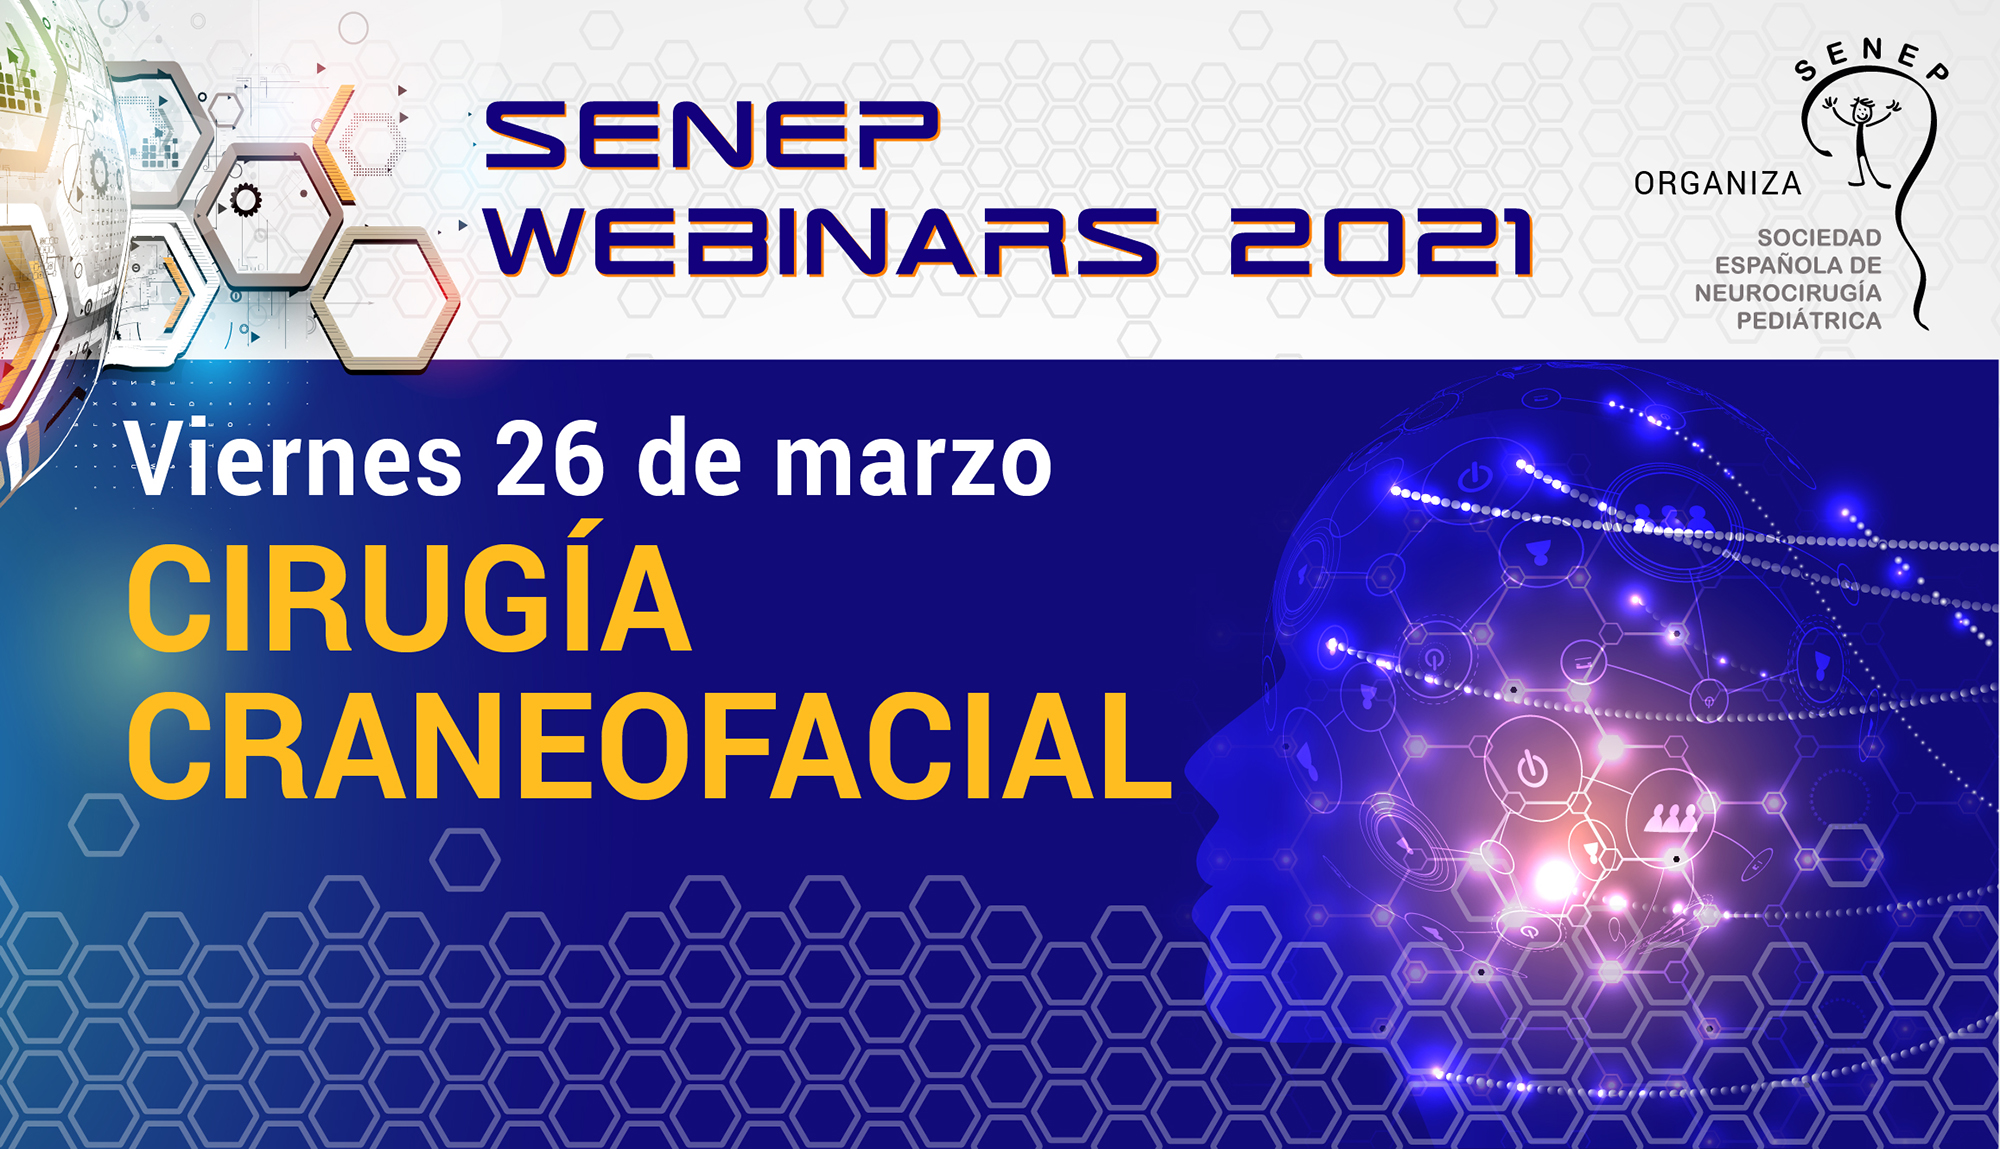 SENEPE webinars 2021 - 26 de marzo SENEPE Sociedad Española de Neurocirugía Pediátrica